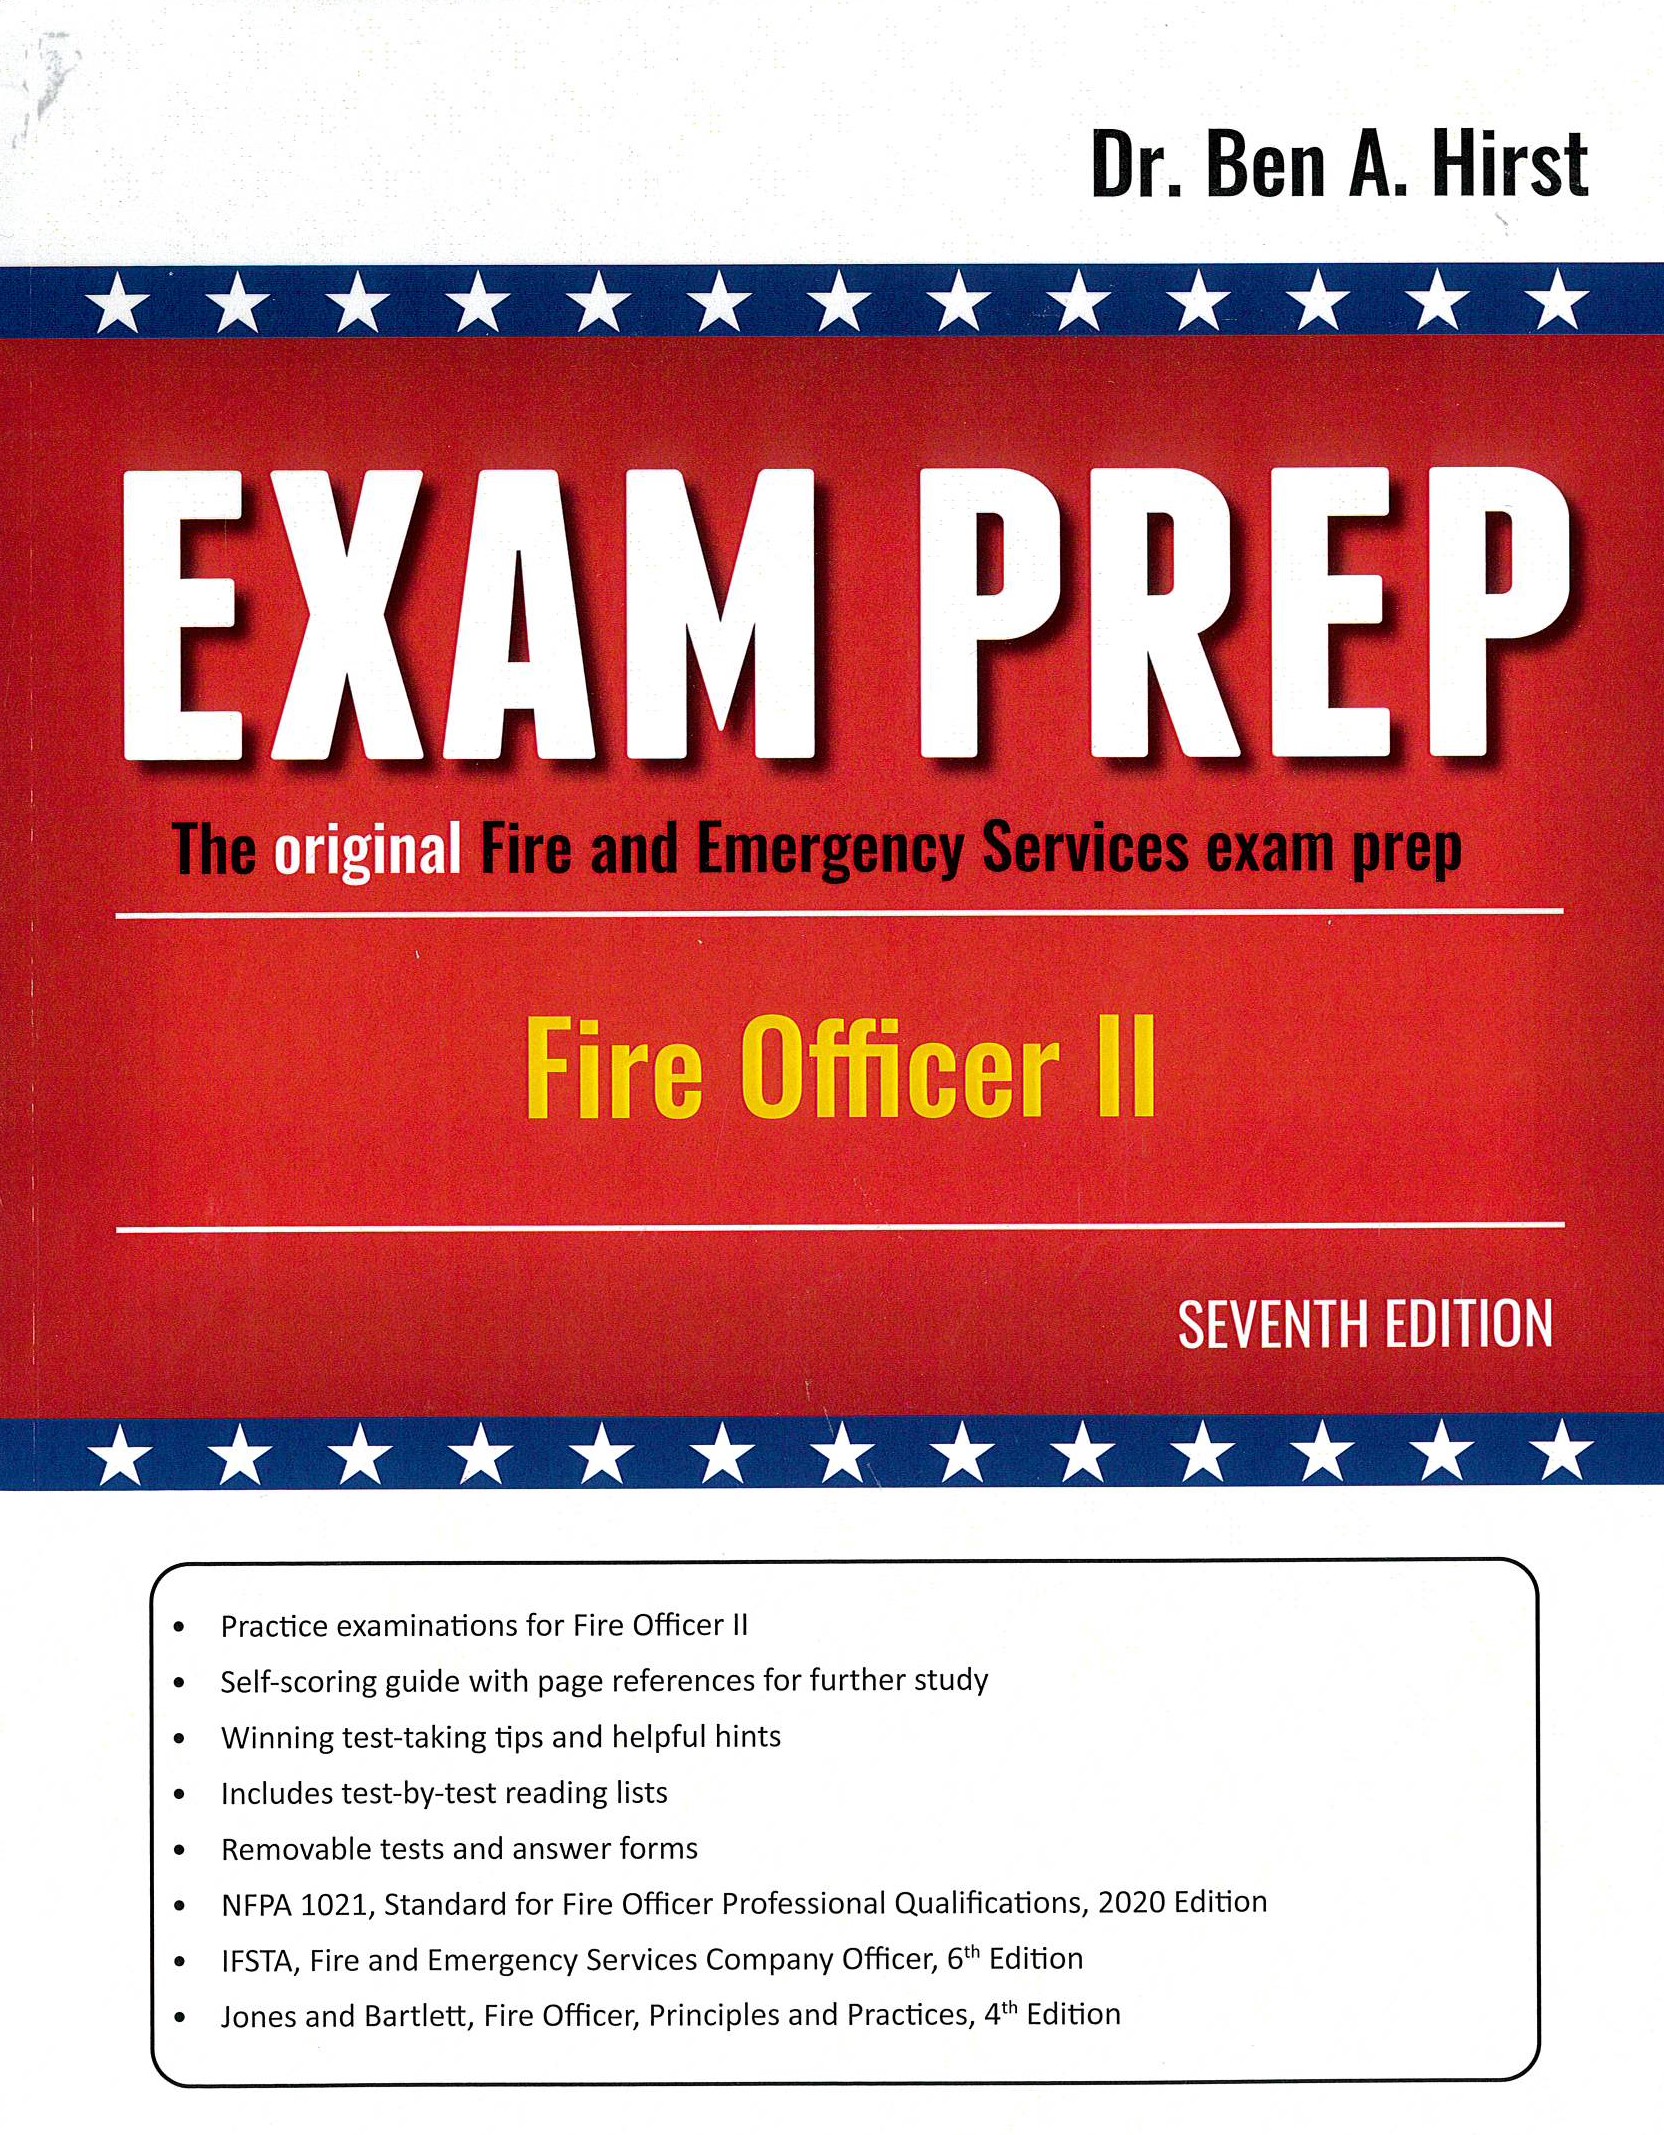 Fire Officer 2 Exam Prep 7th ed.